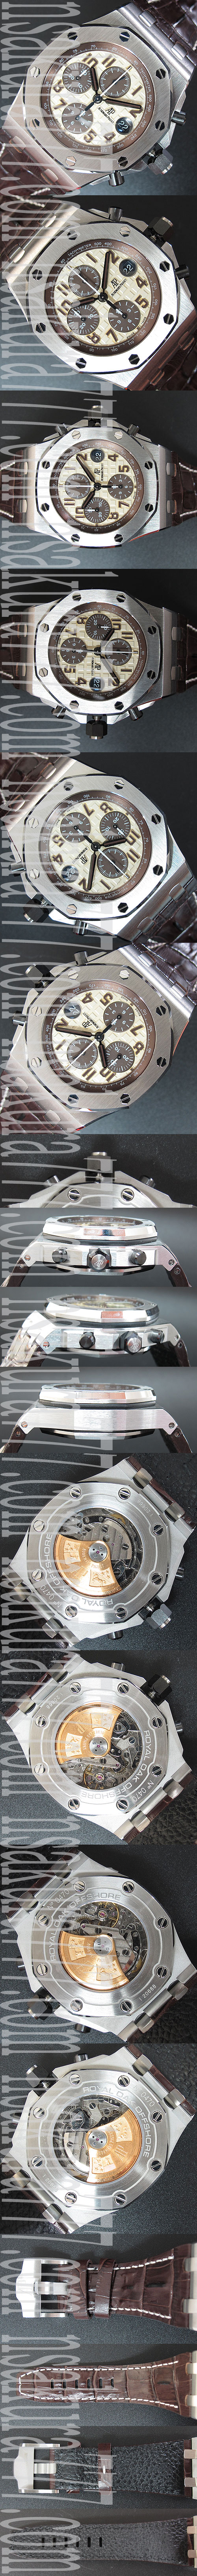 高精度 オーデマピゲコピー時計 ロイヤルオークオフショアクロノクラブ Asian7750搭載！自動巻き デイト 革ベルト